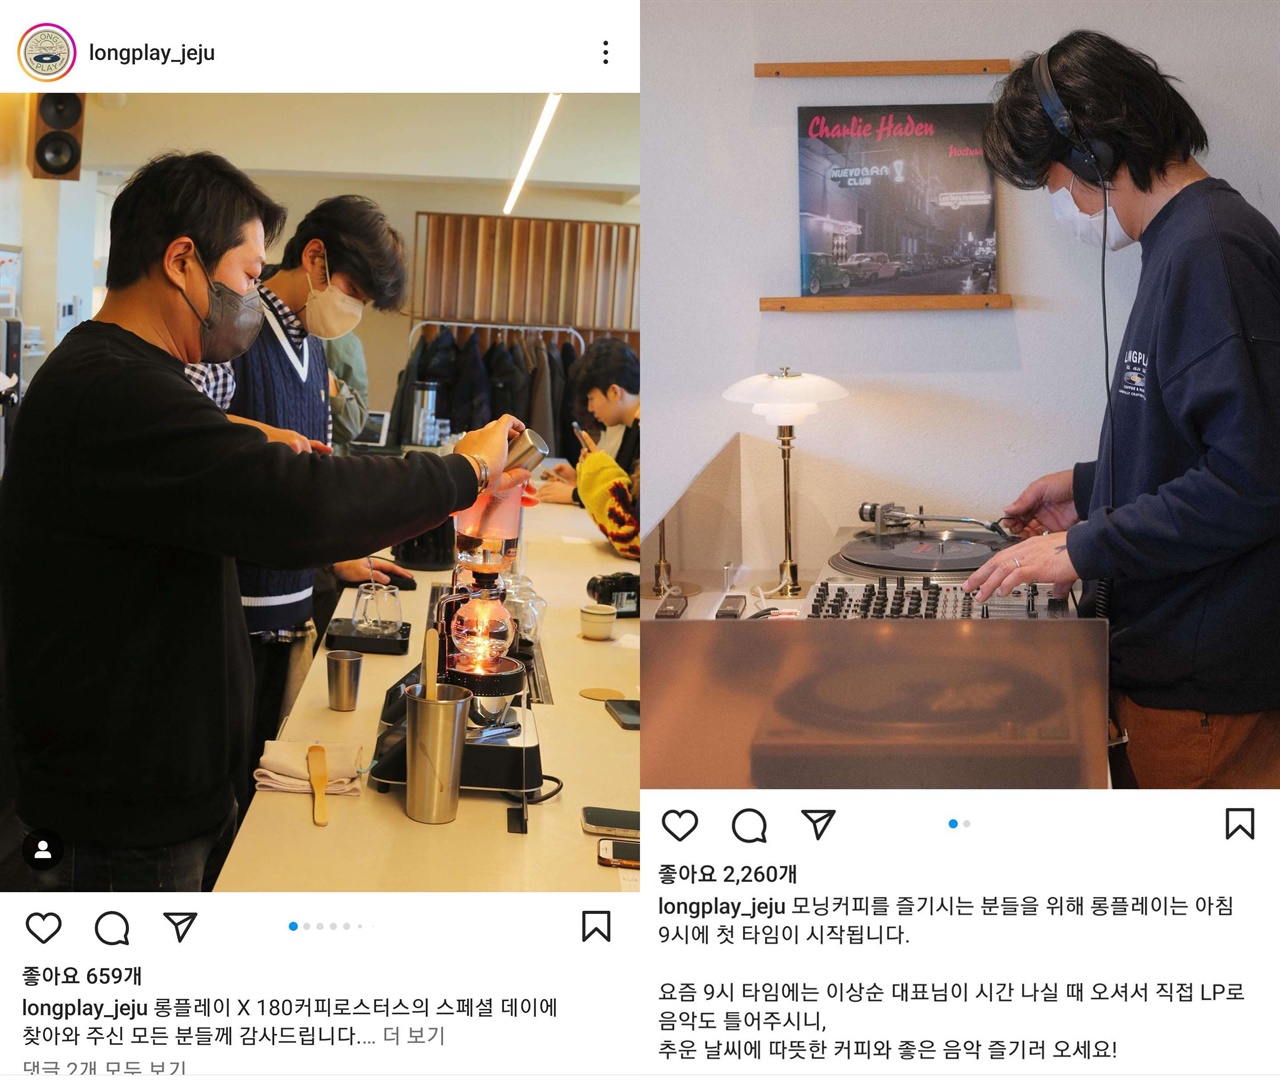  가수 이상순씨가 운영하는 '롱플레이'는 이씨가 오전에 음악을 선곡해 틀어주거나 바리스타 직원들이 손님 앞에서 직접 커피를 내려준다. 